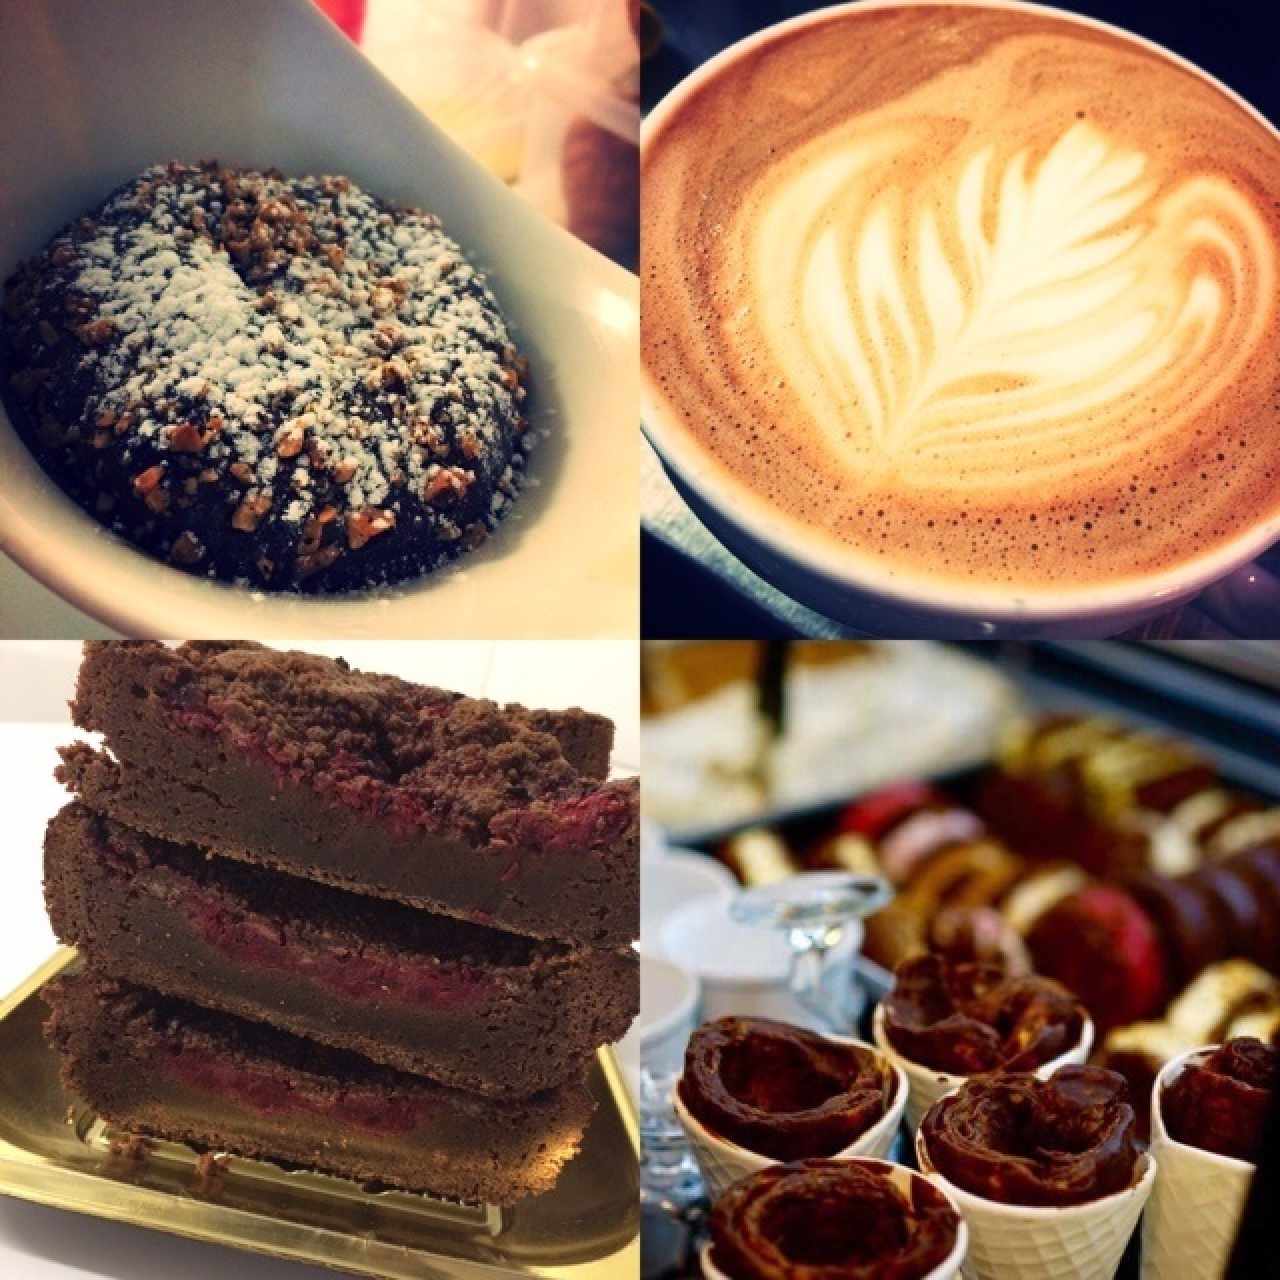 volcan de chocolate , brownie de mora , cappuccino, conos brioche !!